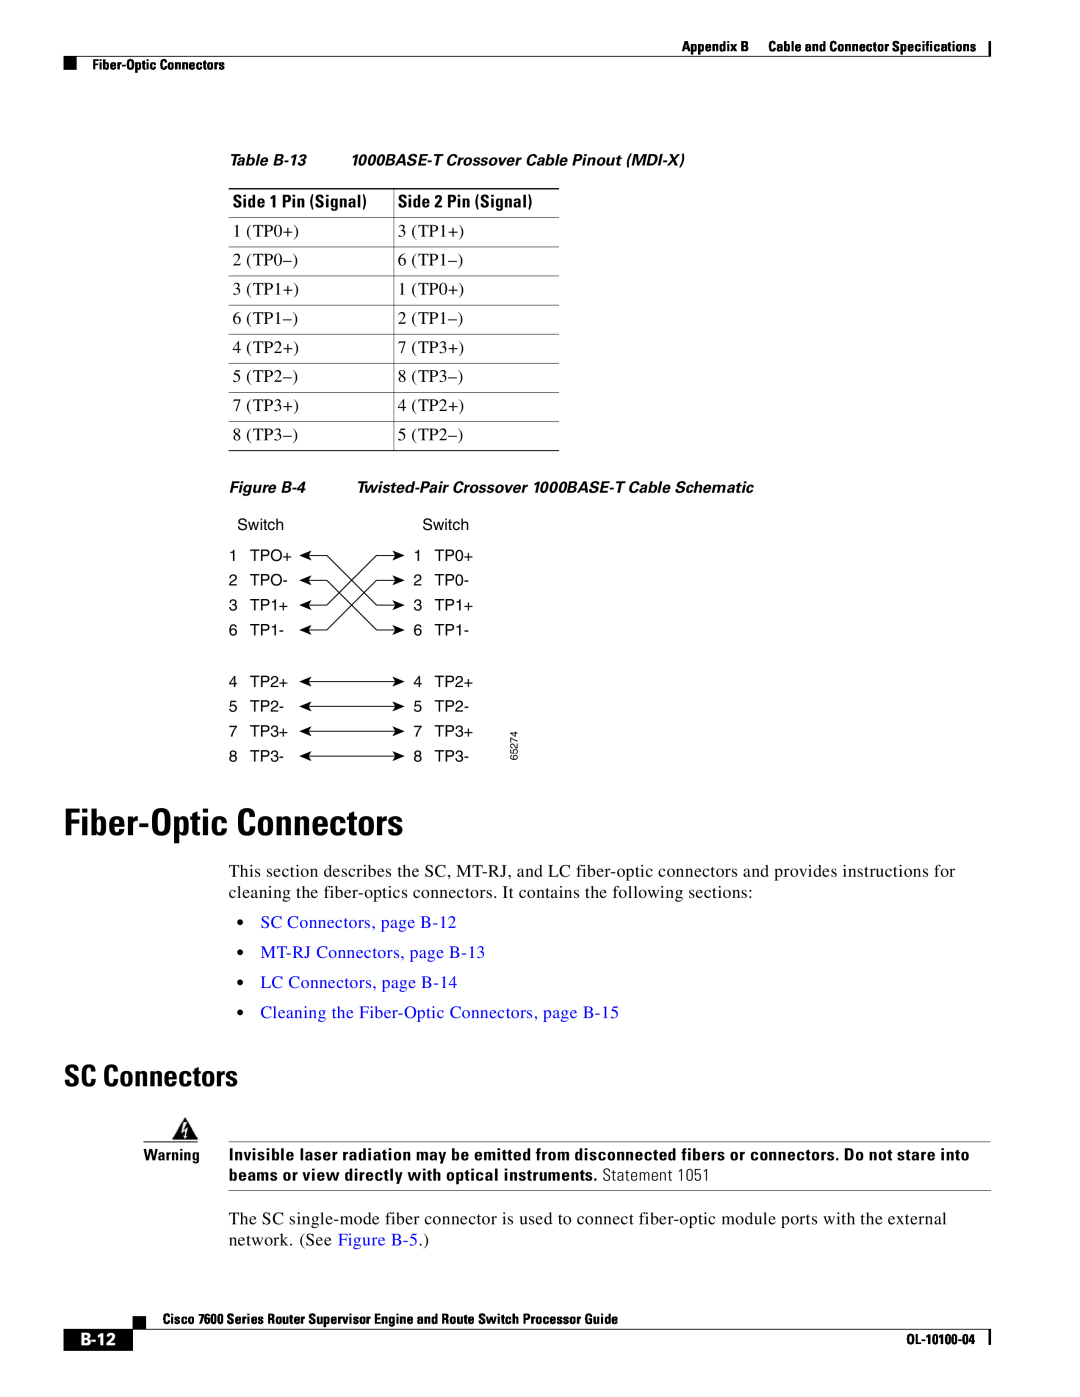 Cisco Systems 7600 manual Fiber-Optic Connectors, SC Connectors, page B-12 MT-RJ Connectors, page B-13 